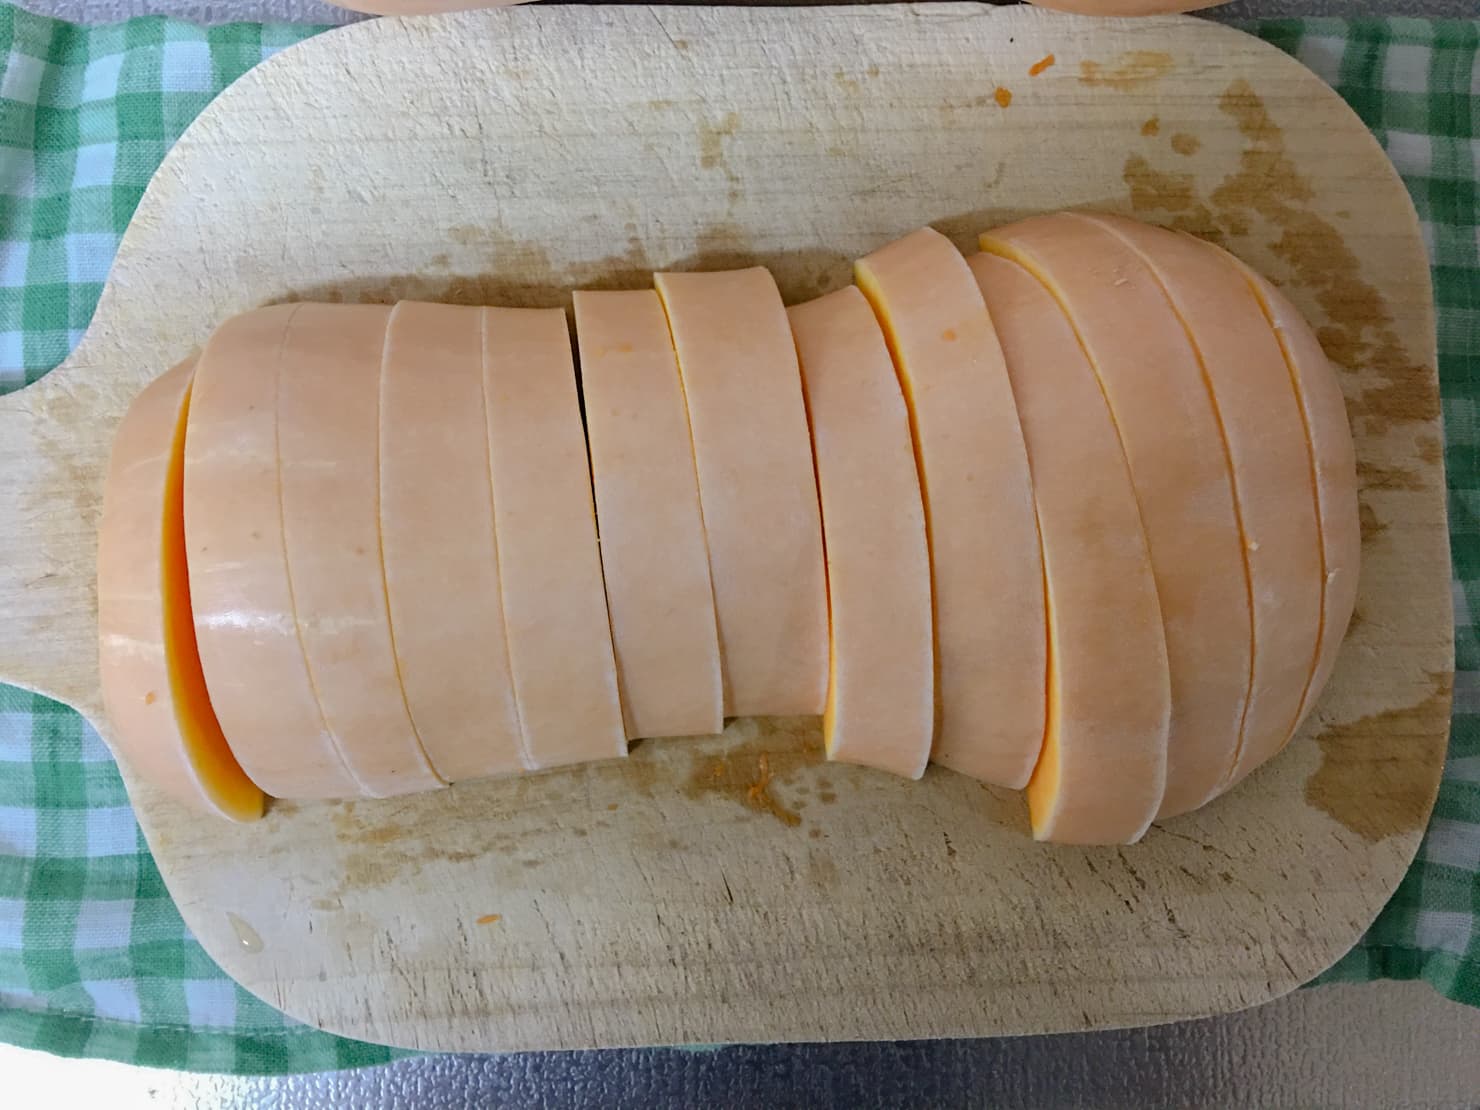 バターナッツかぼちゃを切ったところの写真